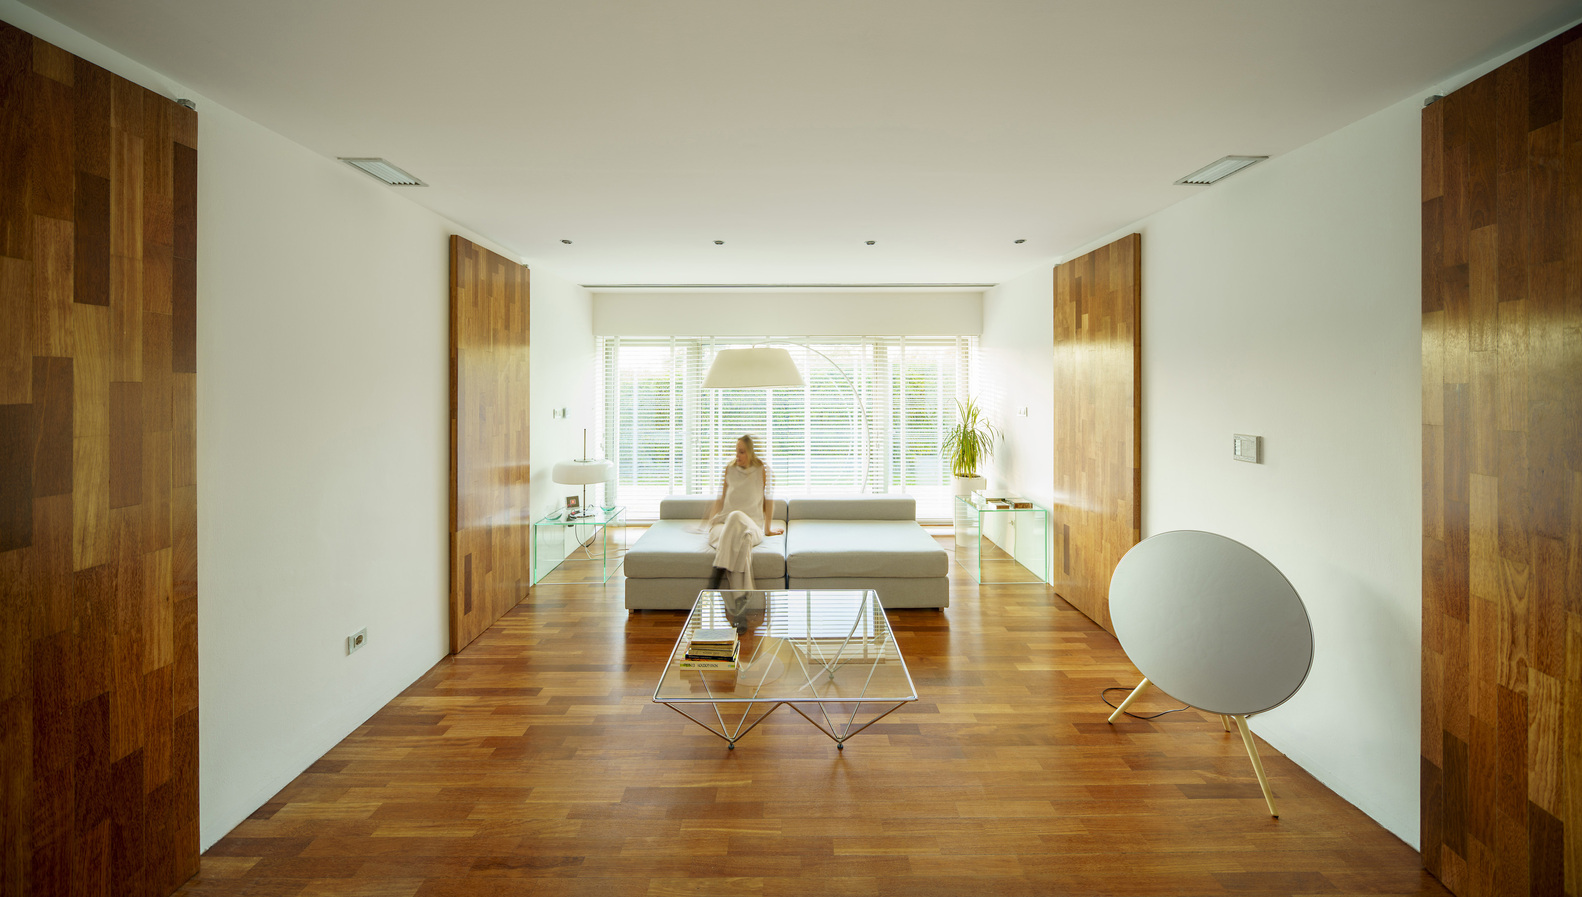 Bên trong ngôi nhà, nội thất sử dụng gam màu trắng chủ đạo kết hợp với vật liệu gỗ màu cánh gián đem đến cảm giác vừa sang trọng vừa gần gũi.